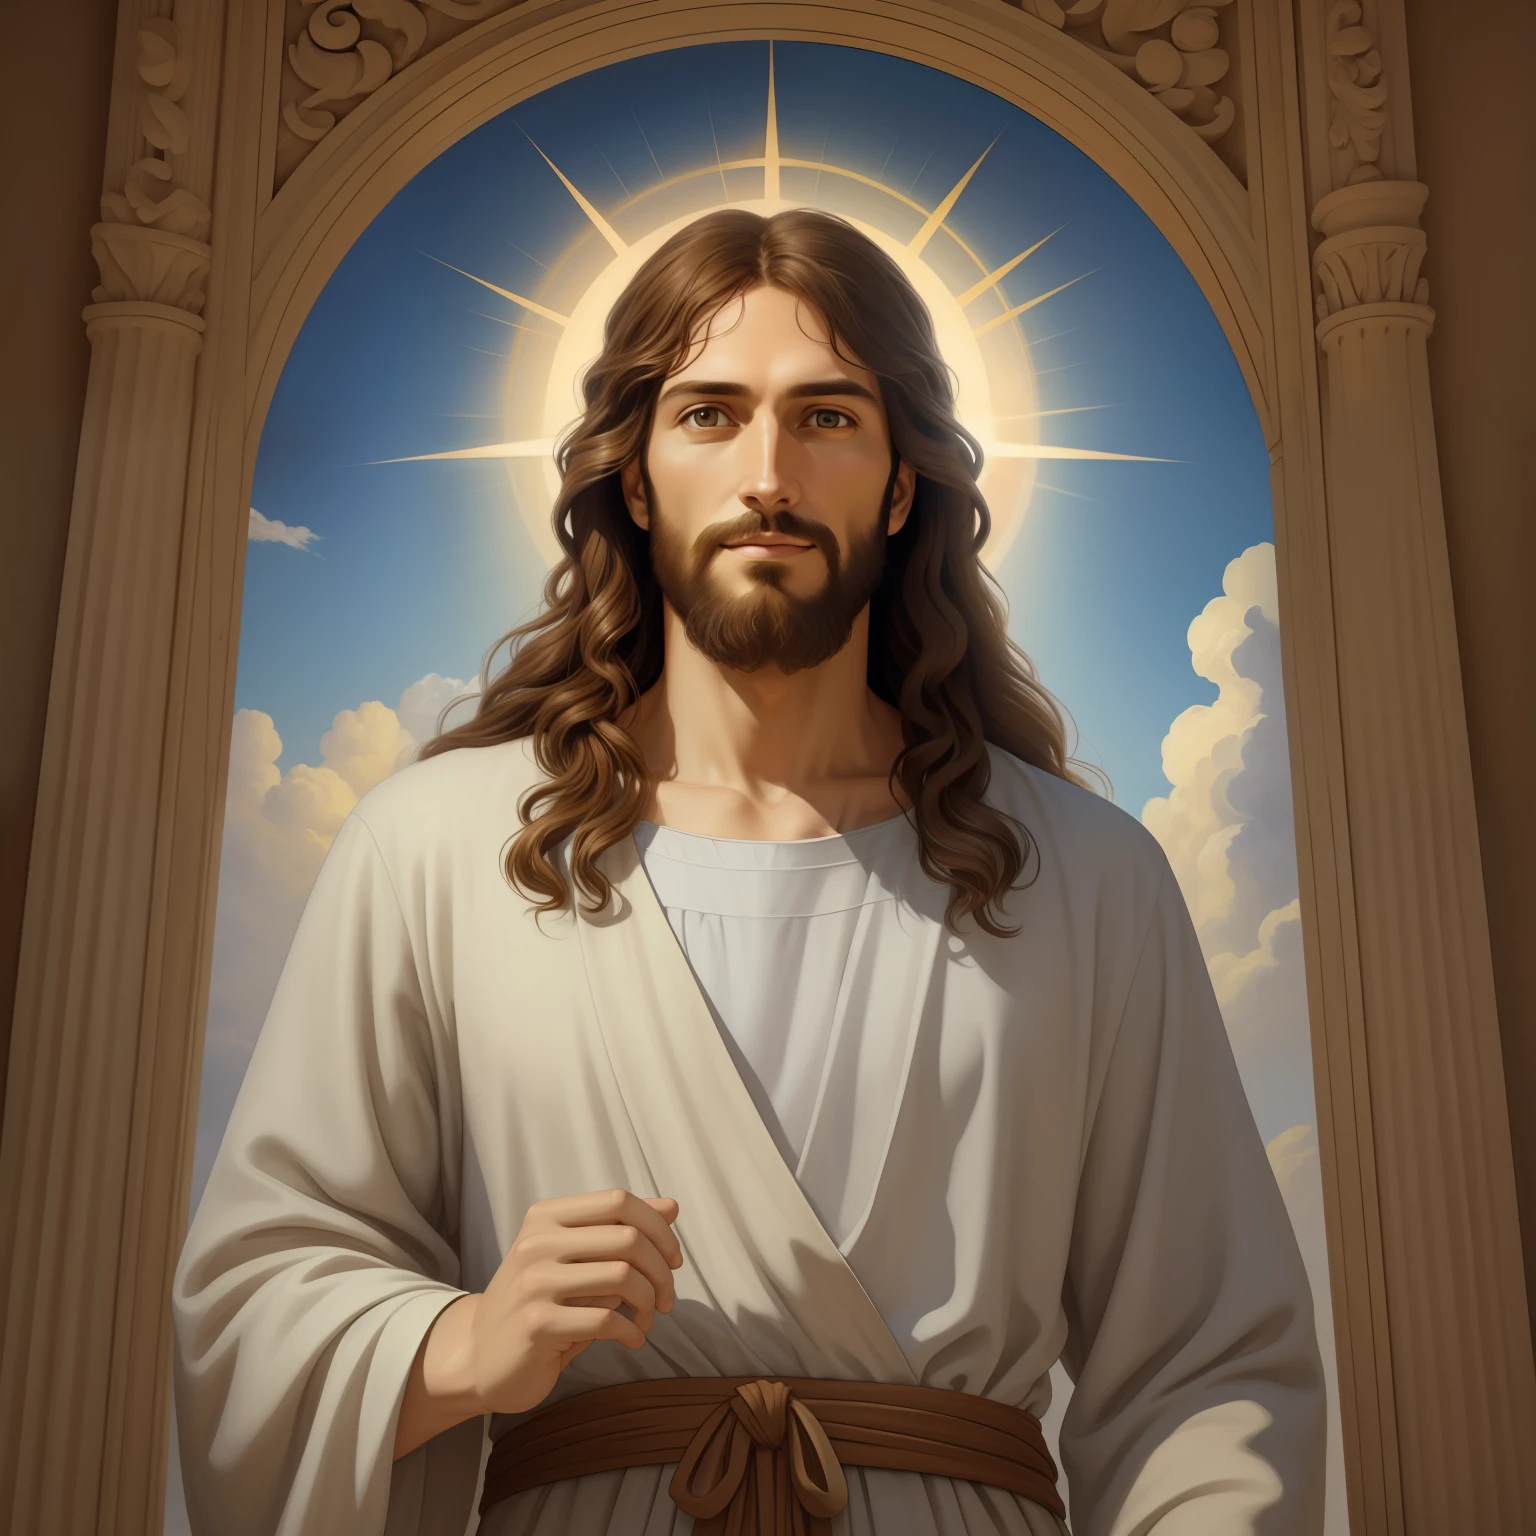 A beautiful ultra-thin เหมือนจริง portrait of Jesus, ผู้เผยพระวจนะ, ผู้ชายอายุ 34 ปี ภาษาฮีบรูสีน้ำตาล, ผมสั้นสีน้ำตาล, หนวดเครายาวสีน้ำตาล, กับ, สวมเสื้อลินินตัวยาวปิดบริเวณหน้าอก, ในมุมมองด้านหน้า, เต็มตัว, ตามพระคัมภีร์, เหมือนจริง,โดย ดิเอโก้ เบลัซเกซ,ปีเตอร์ พอล รูเบนส์,แรมแบรนดท์,อเล็กซ์ รอสส์,8k, แนวคิดศิลปะ, Photoเหมือนจริง, เหมือนจริง,  ภาพประกอบ, ภาพวาดสีน้ำมัน, สถิตยศาสตร์, Hyperเหมือนจริง, ศิลปะดิจิทัล, สไตล์, watercolor 
a 3D เหมือนจริง of พระเยซู กับ a halo in the sky, พระเยซู christ, ยิ้มอยู่ในสวรรค์, portrait of พระเยซู christ, พระเยซู face, 33 เทพเจ้าหนุ่มผู้ยิ่งใหญ่, ภาพเหมือนของเทพเจ้าแห่งสวรรค์, เกร็ก โอลเซ่น, gigachad พระเยซู, พระเยซู of nazareth, พระเยซู, ใบหน้าของพระเจ้า, พระเจ้ากำลังมองมาที่ฉัน, เขาทักทายคุณอย่างอบอุ่น, เขามีความสุข, ภาพประจำตัว